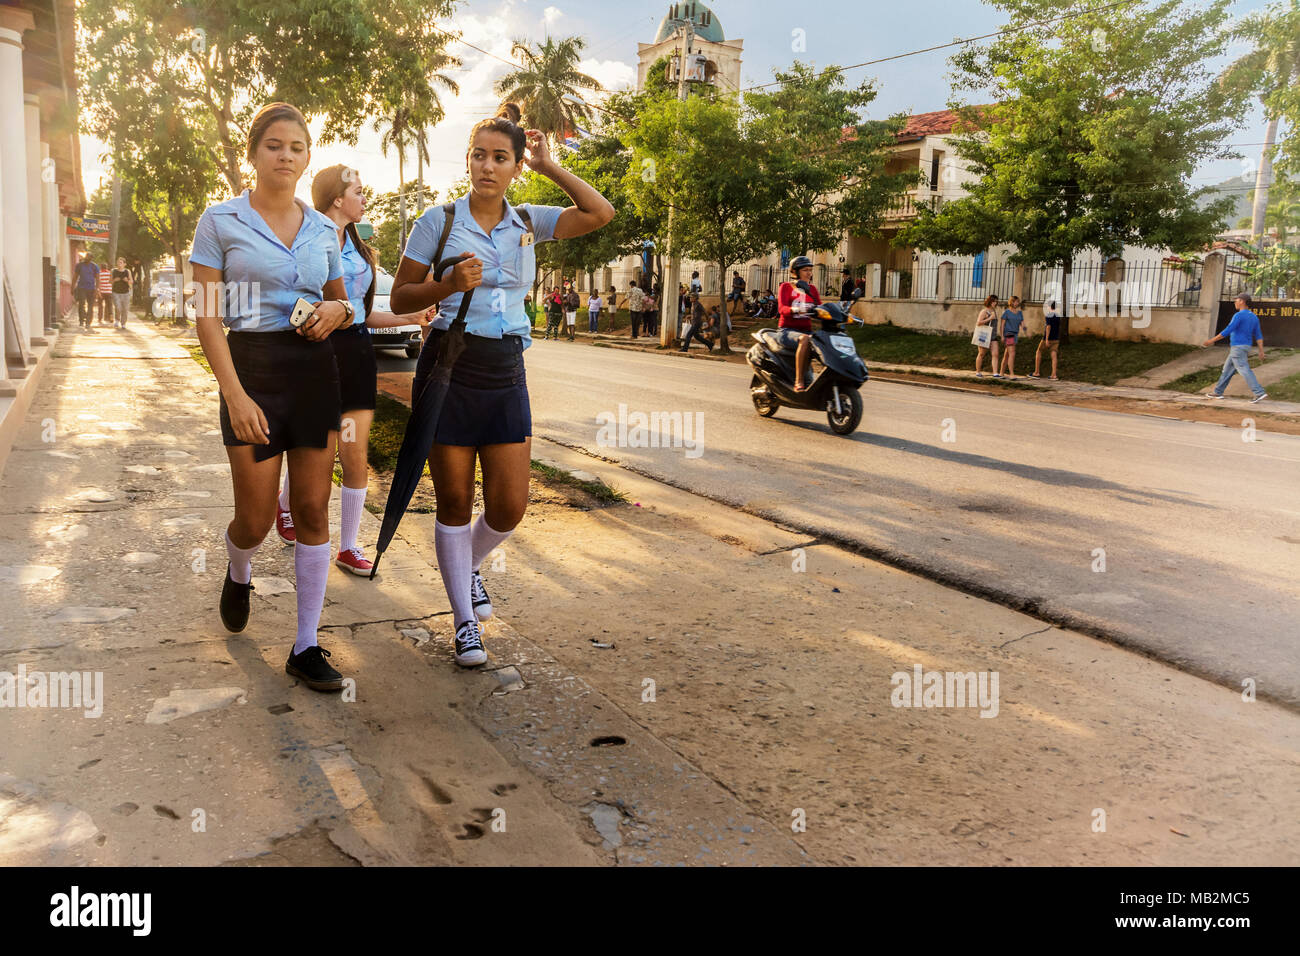 Vinales, Cuba - December 5, 2017: Schoolgirls in uniform walk the streets of Vinales Stock Photo